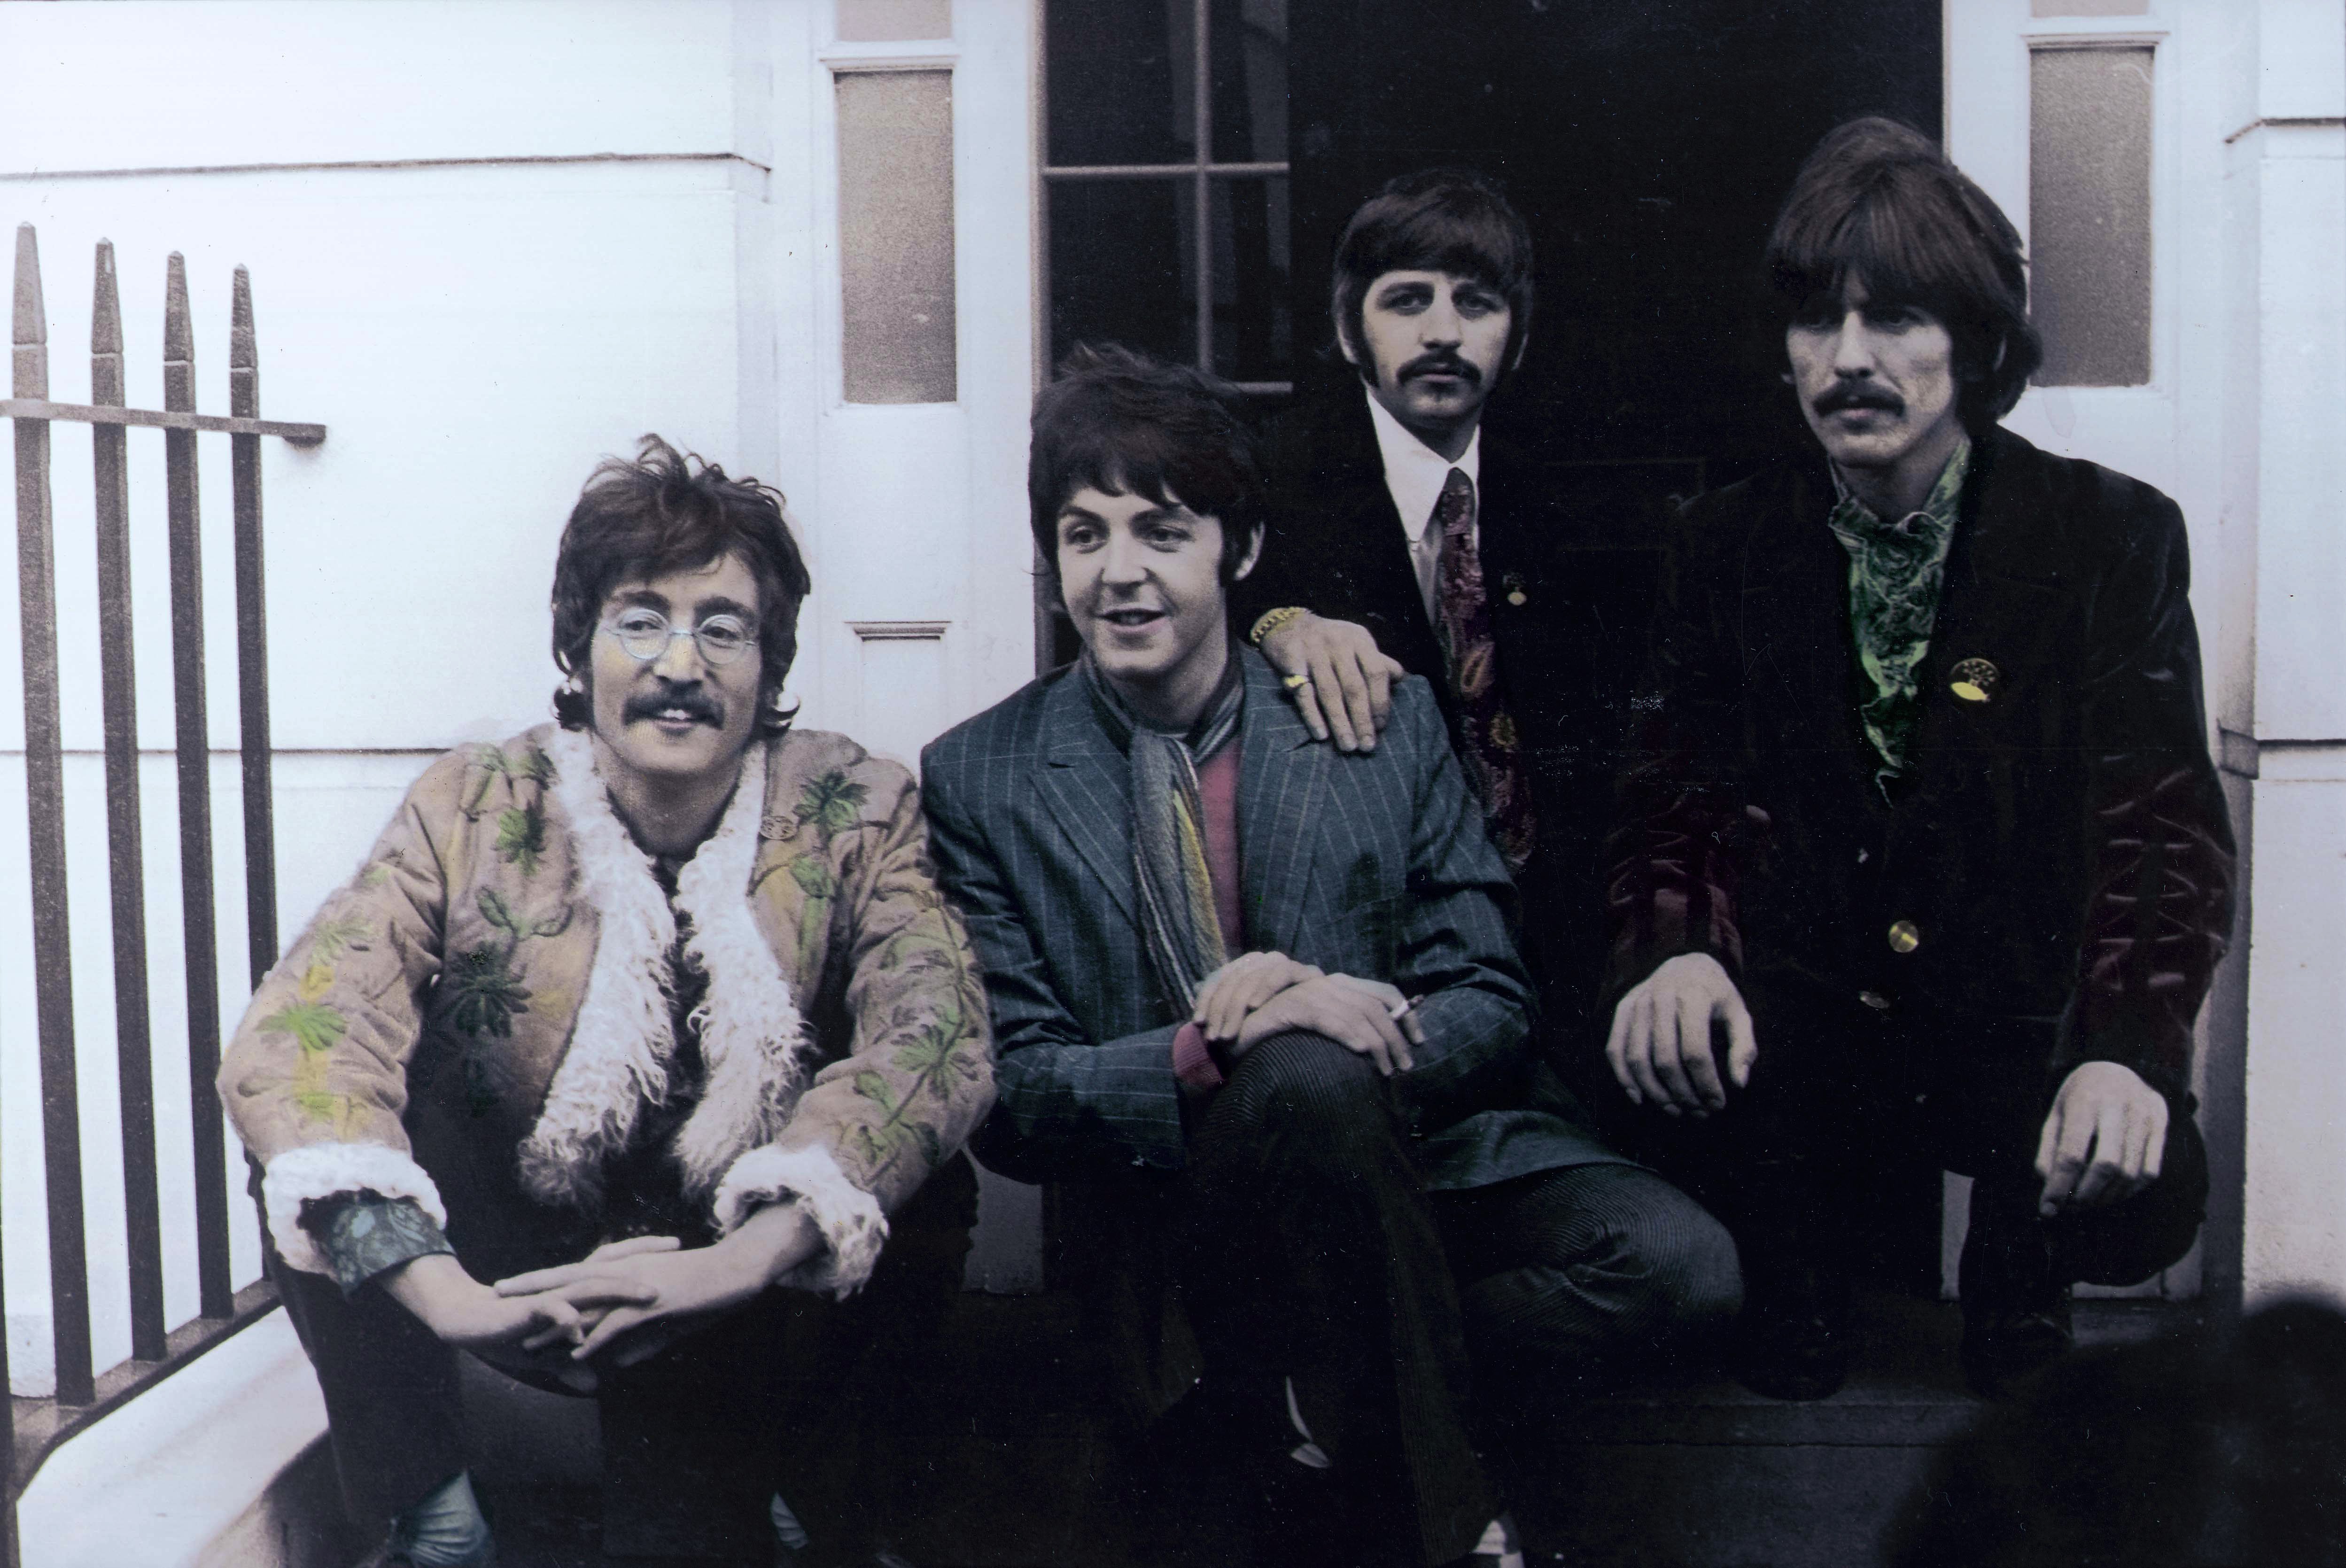 The Beatles' John Lennon, Paul McCartney, Ringo Starr, George Harrison on steps during the "Get Back" era